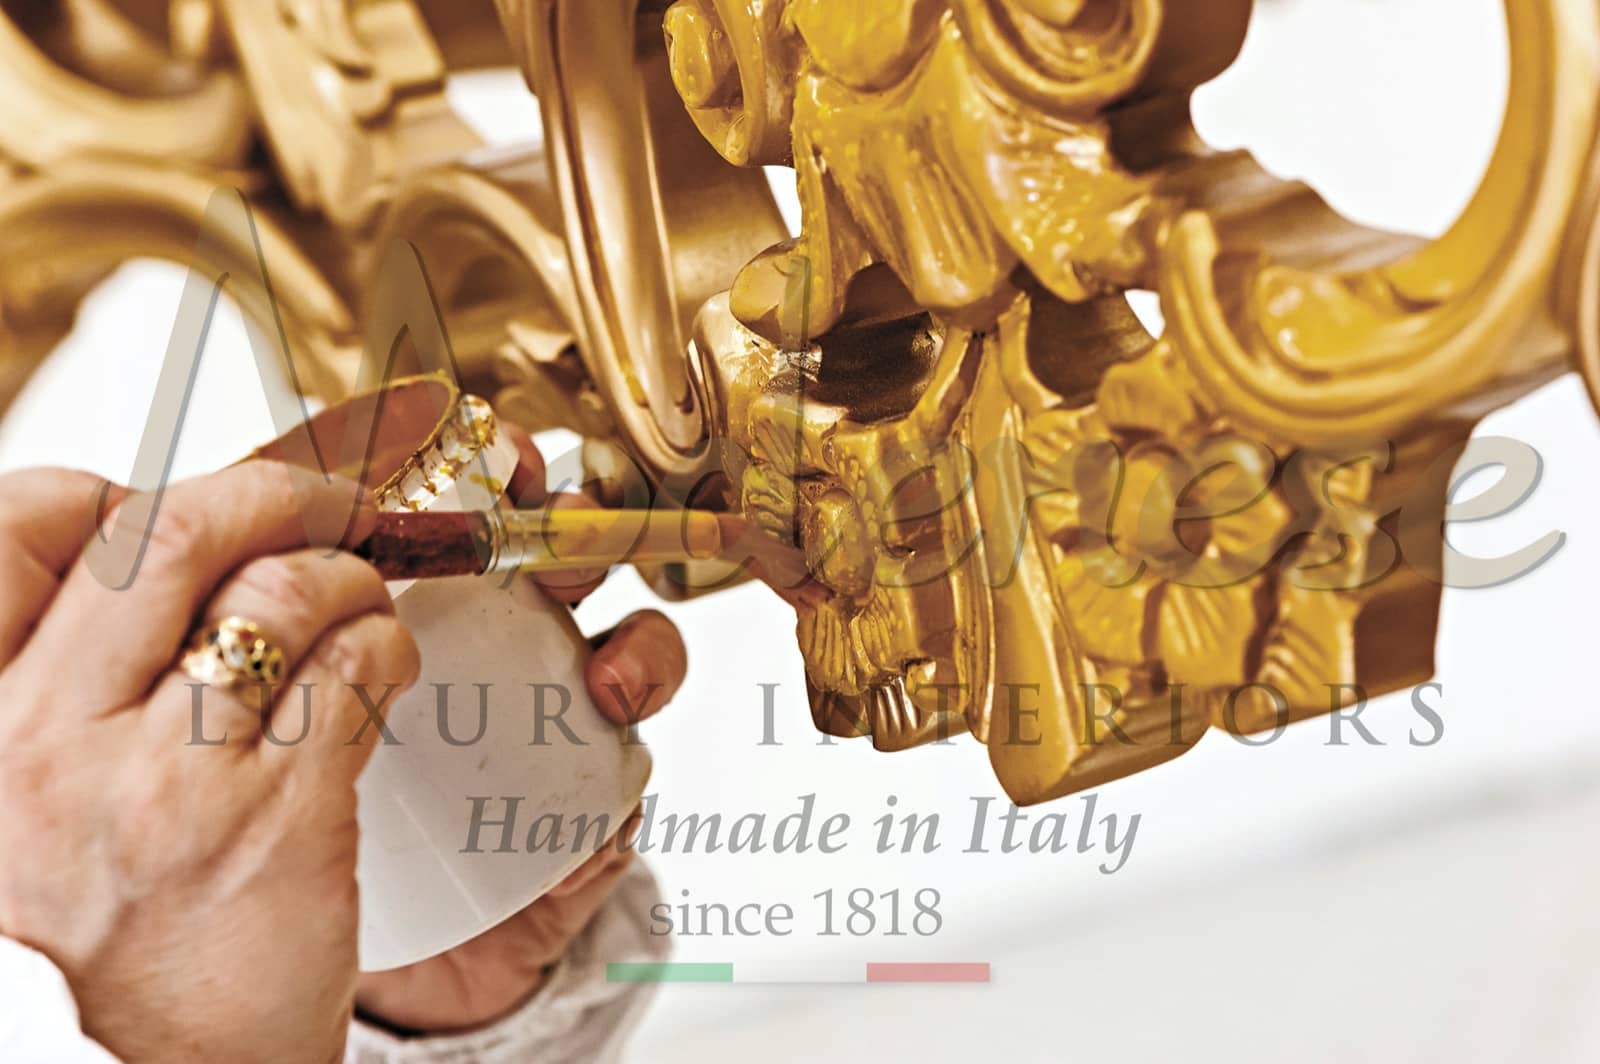 aplikace plátkového zlata 24k mistři řemeslníci ruční výroba luxusního italského nábytku na míru umělecké kousky detaly design interiéru královská vila obytný palác luxusní zlatá dekorac